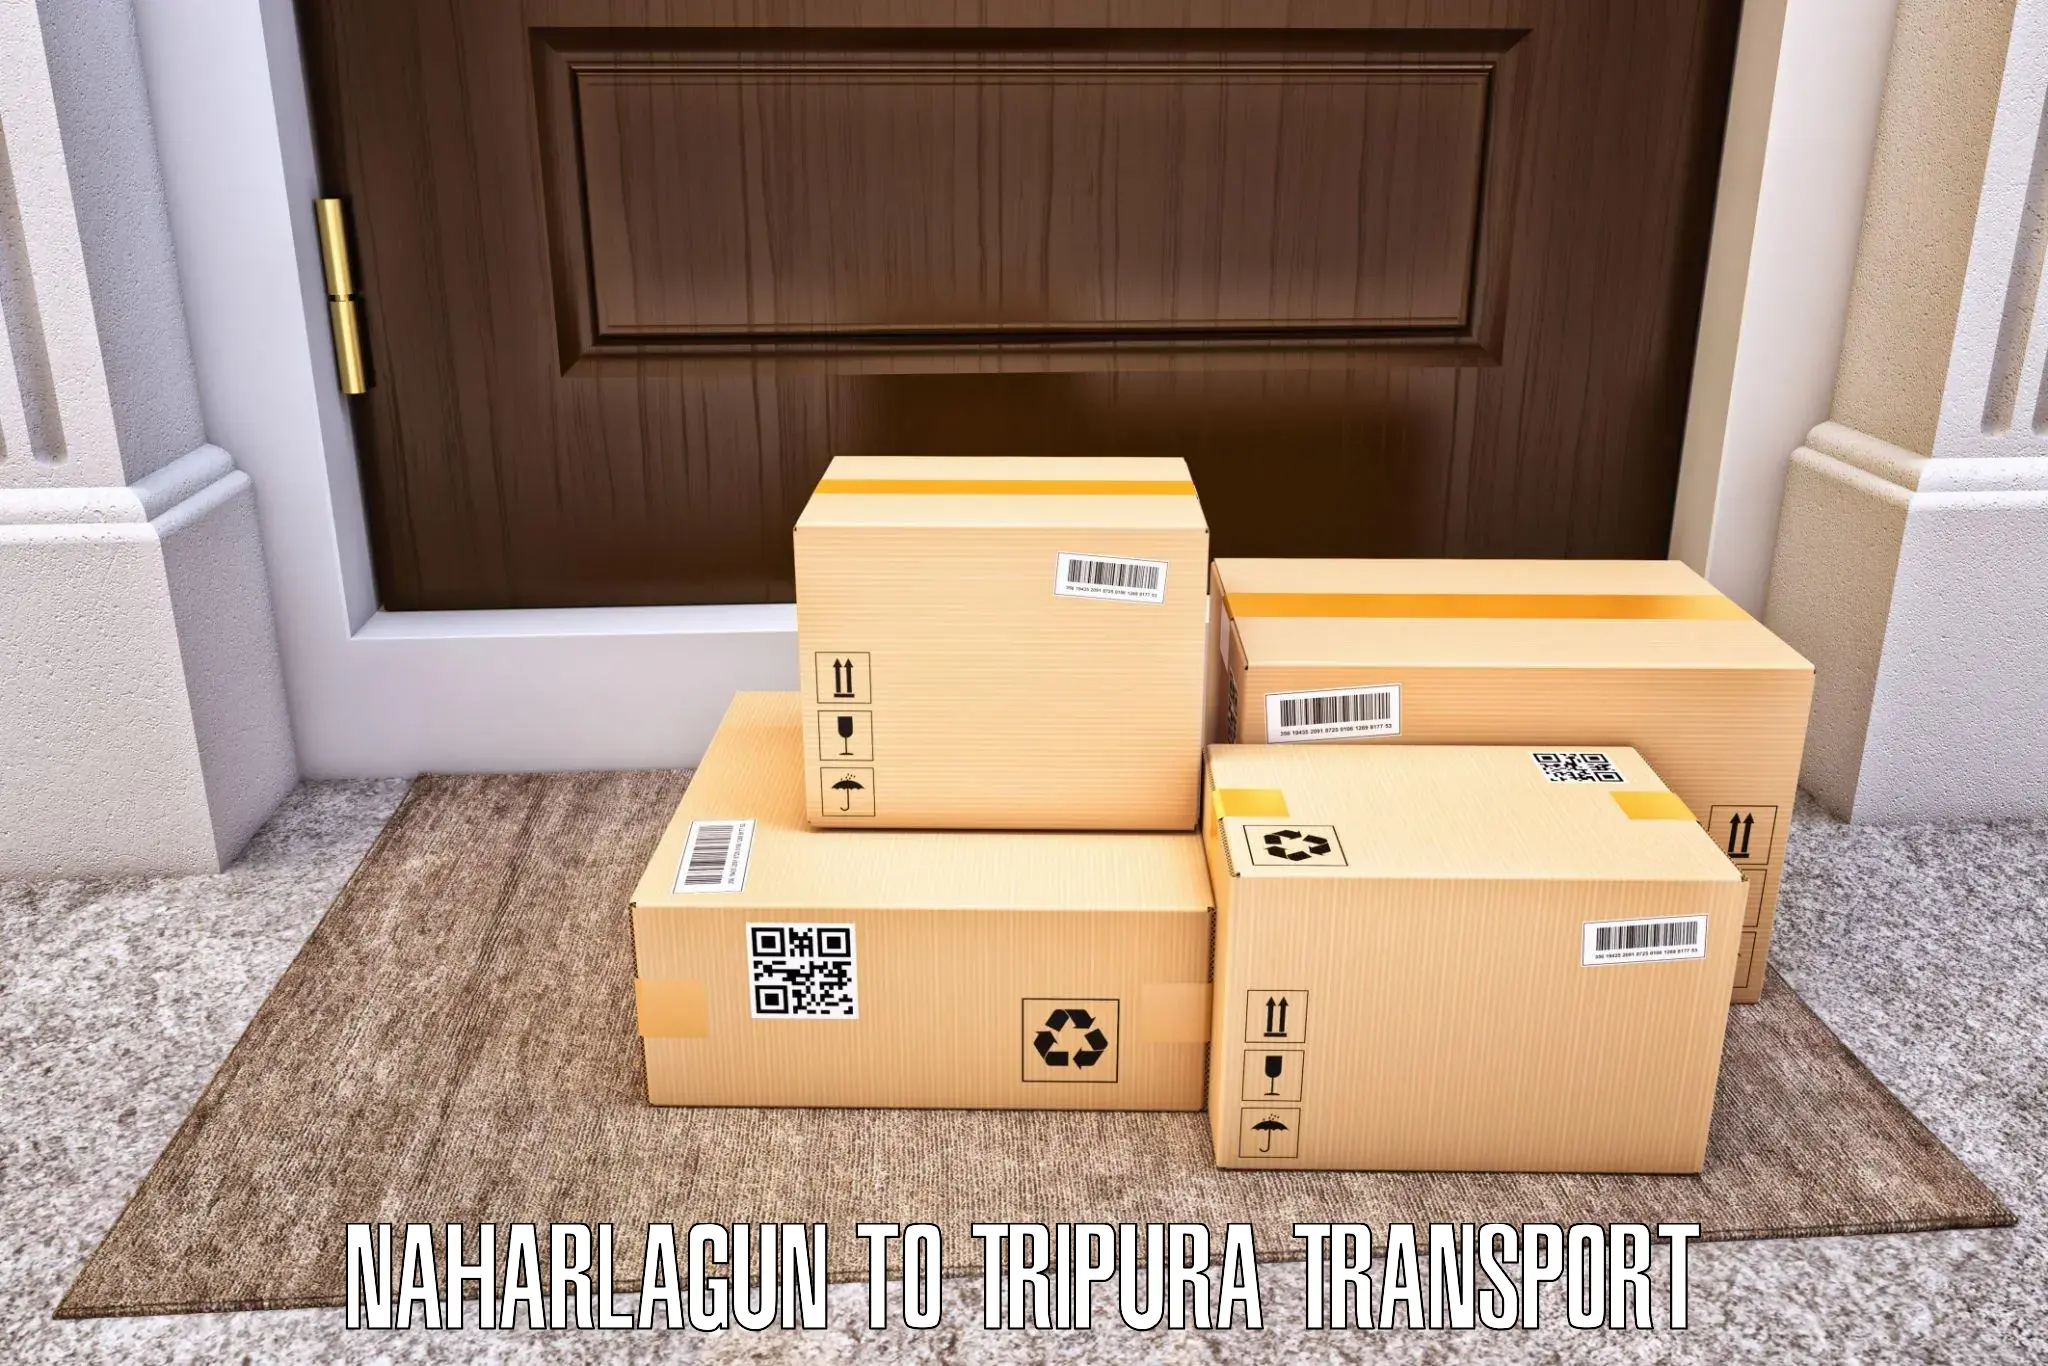 Daily parcel service transport Naharlagun to Aambasa